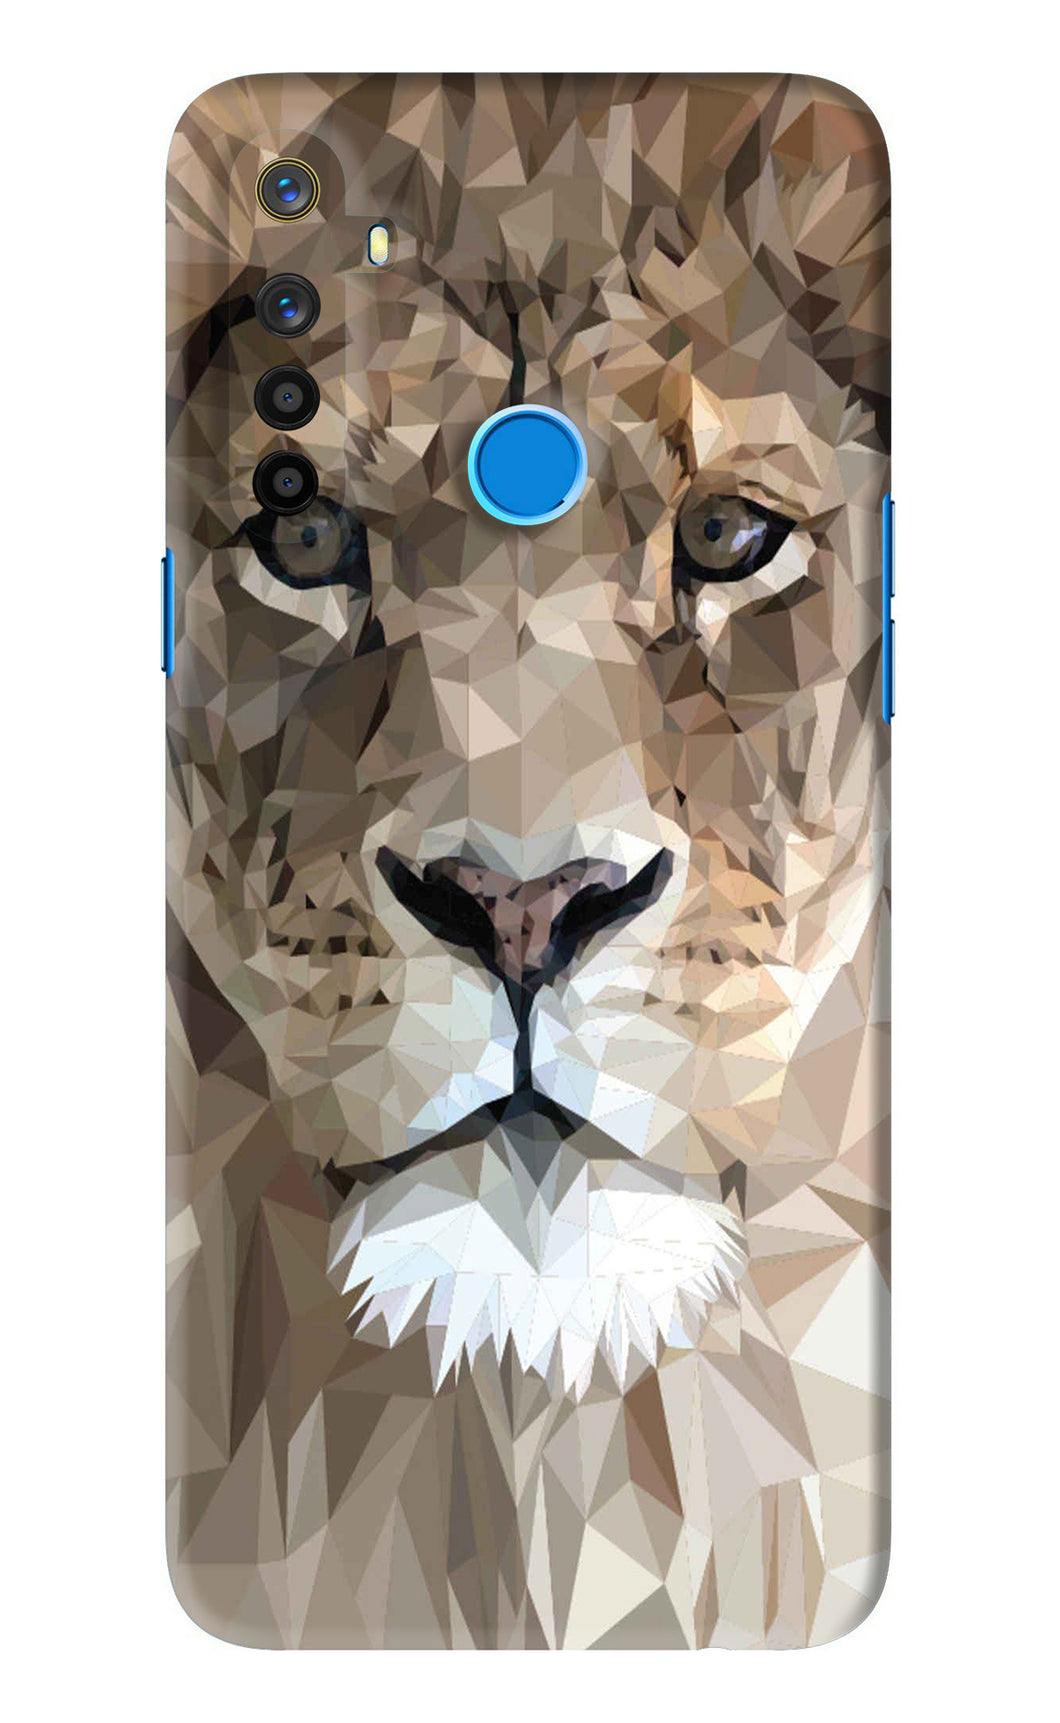 Lion Art Realme 5s Back Skin Wrap